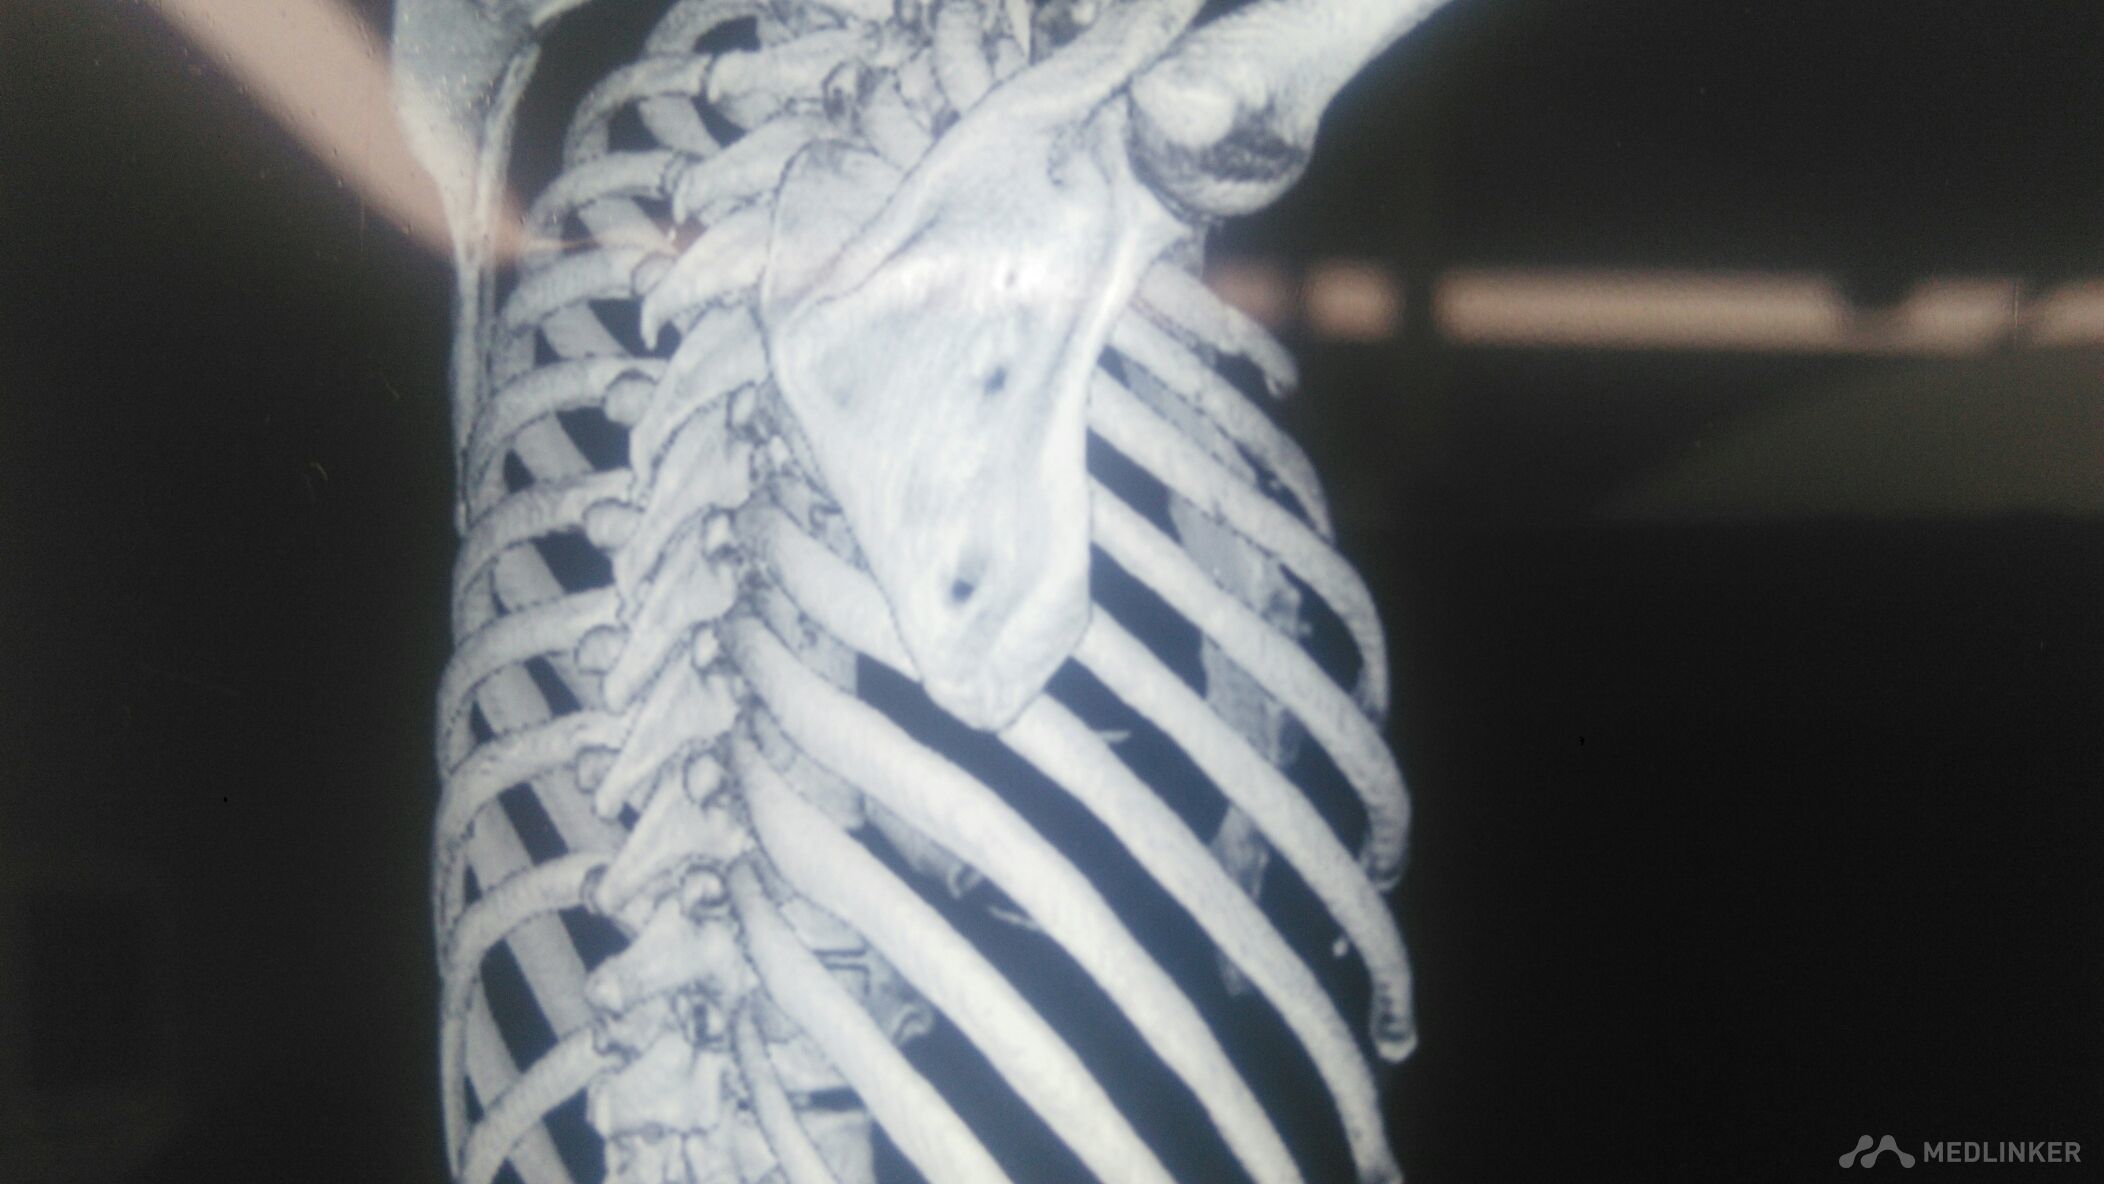 肋骨骨折断端重叠（详见CT报告单、图片）._百度知道